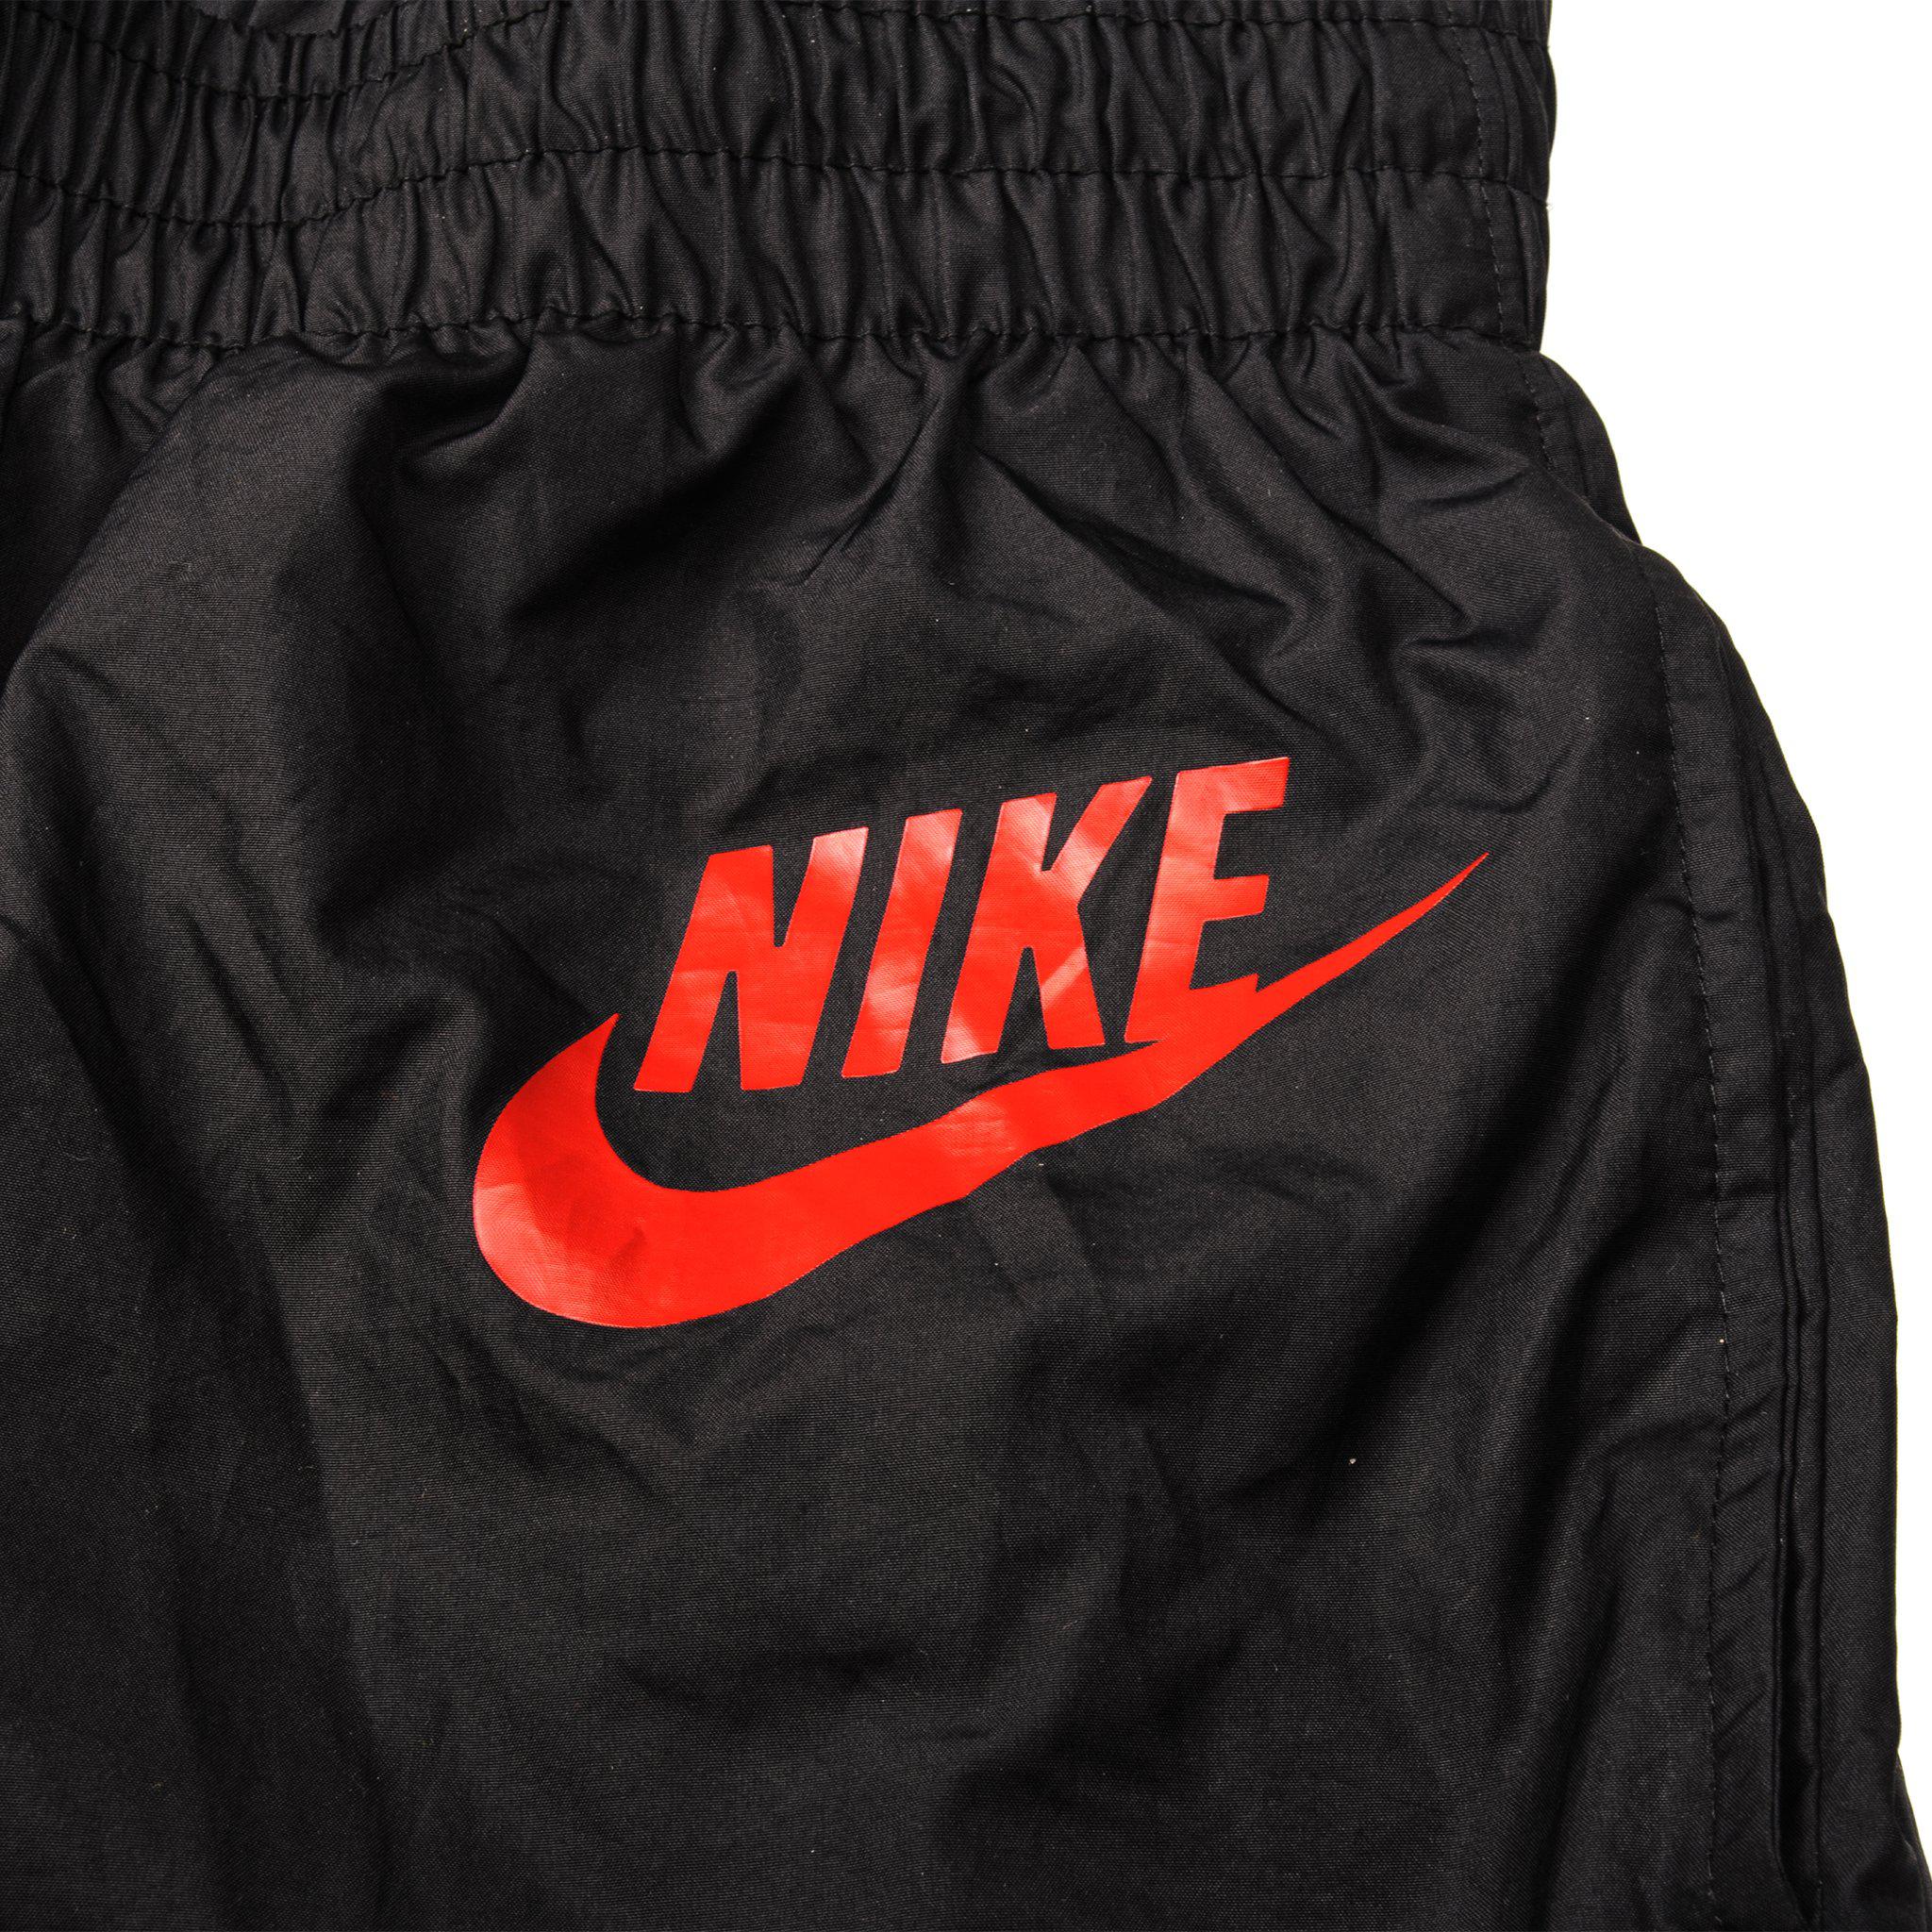 Nike black capris size small